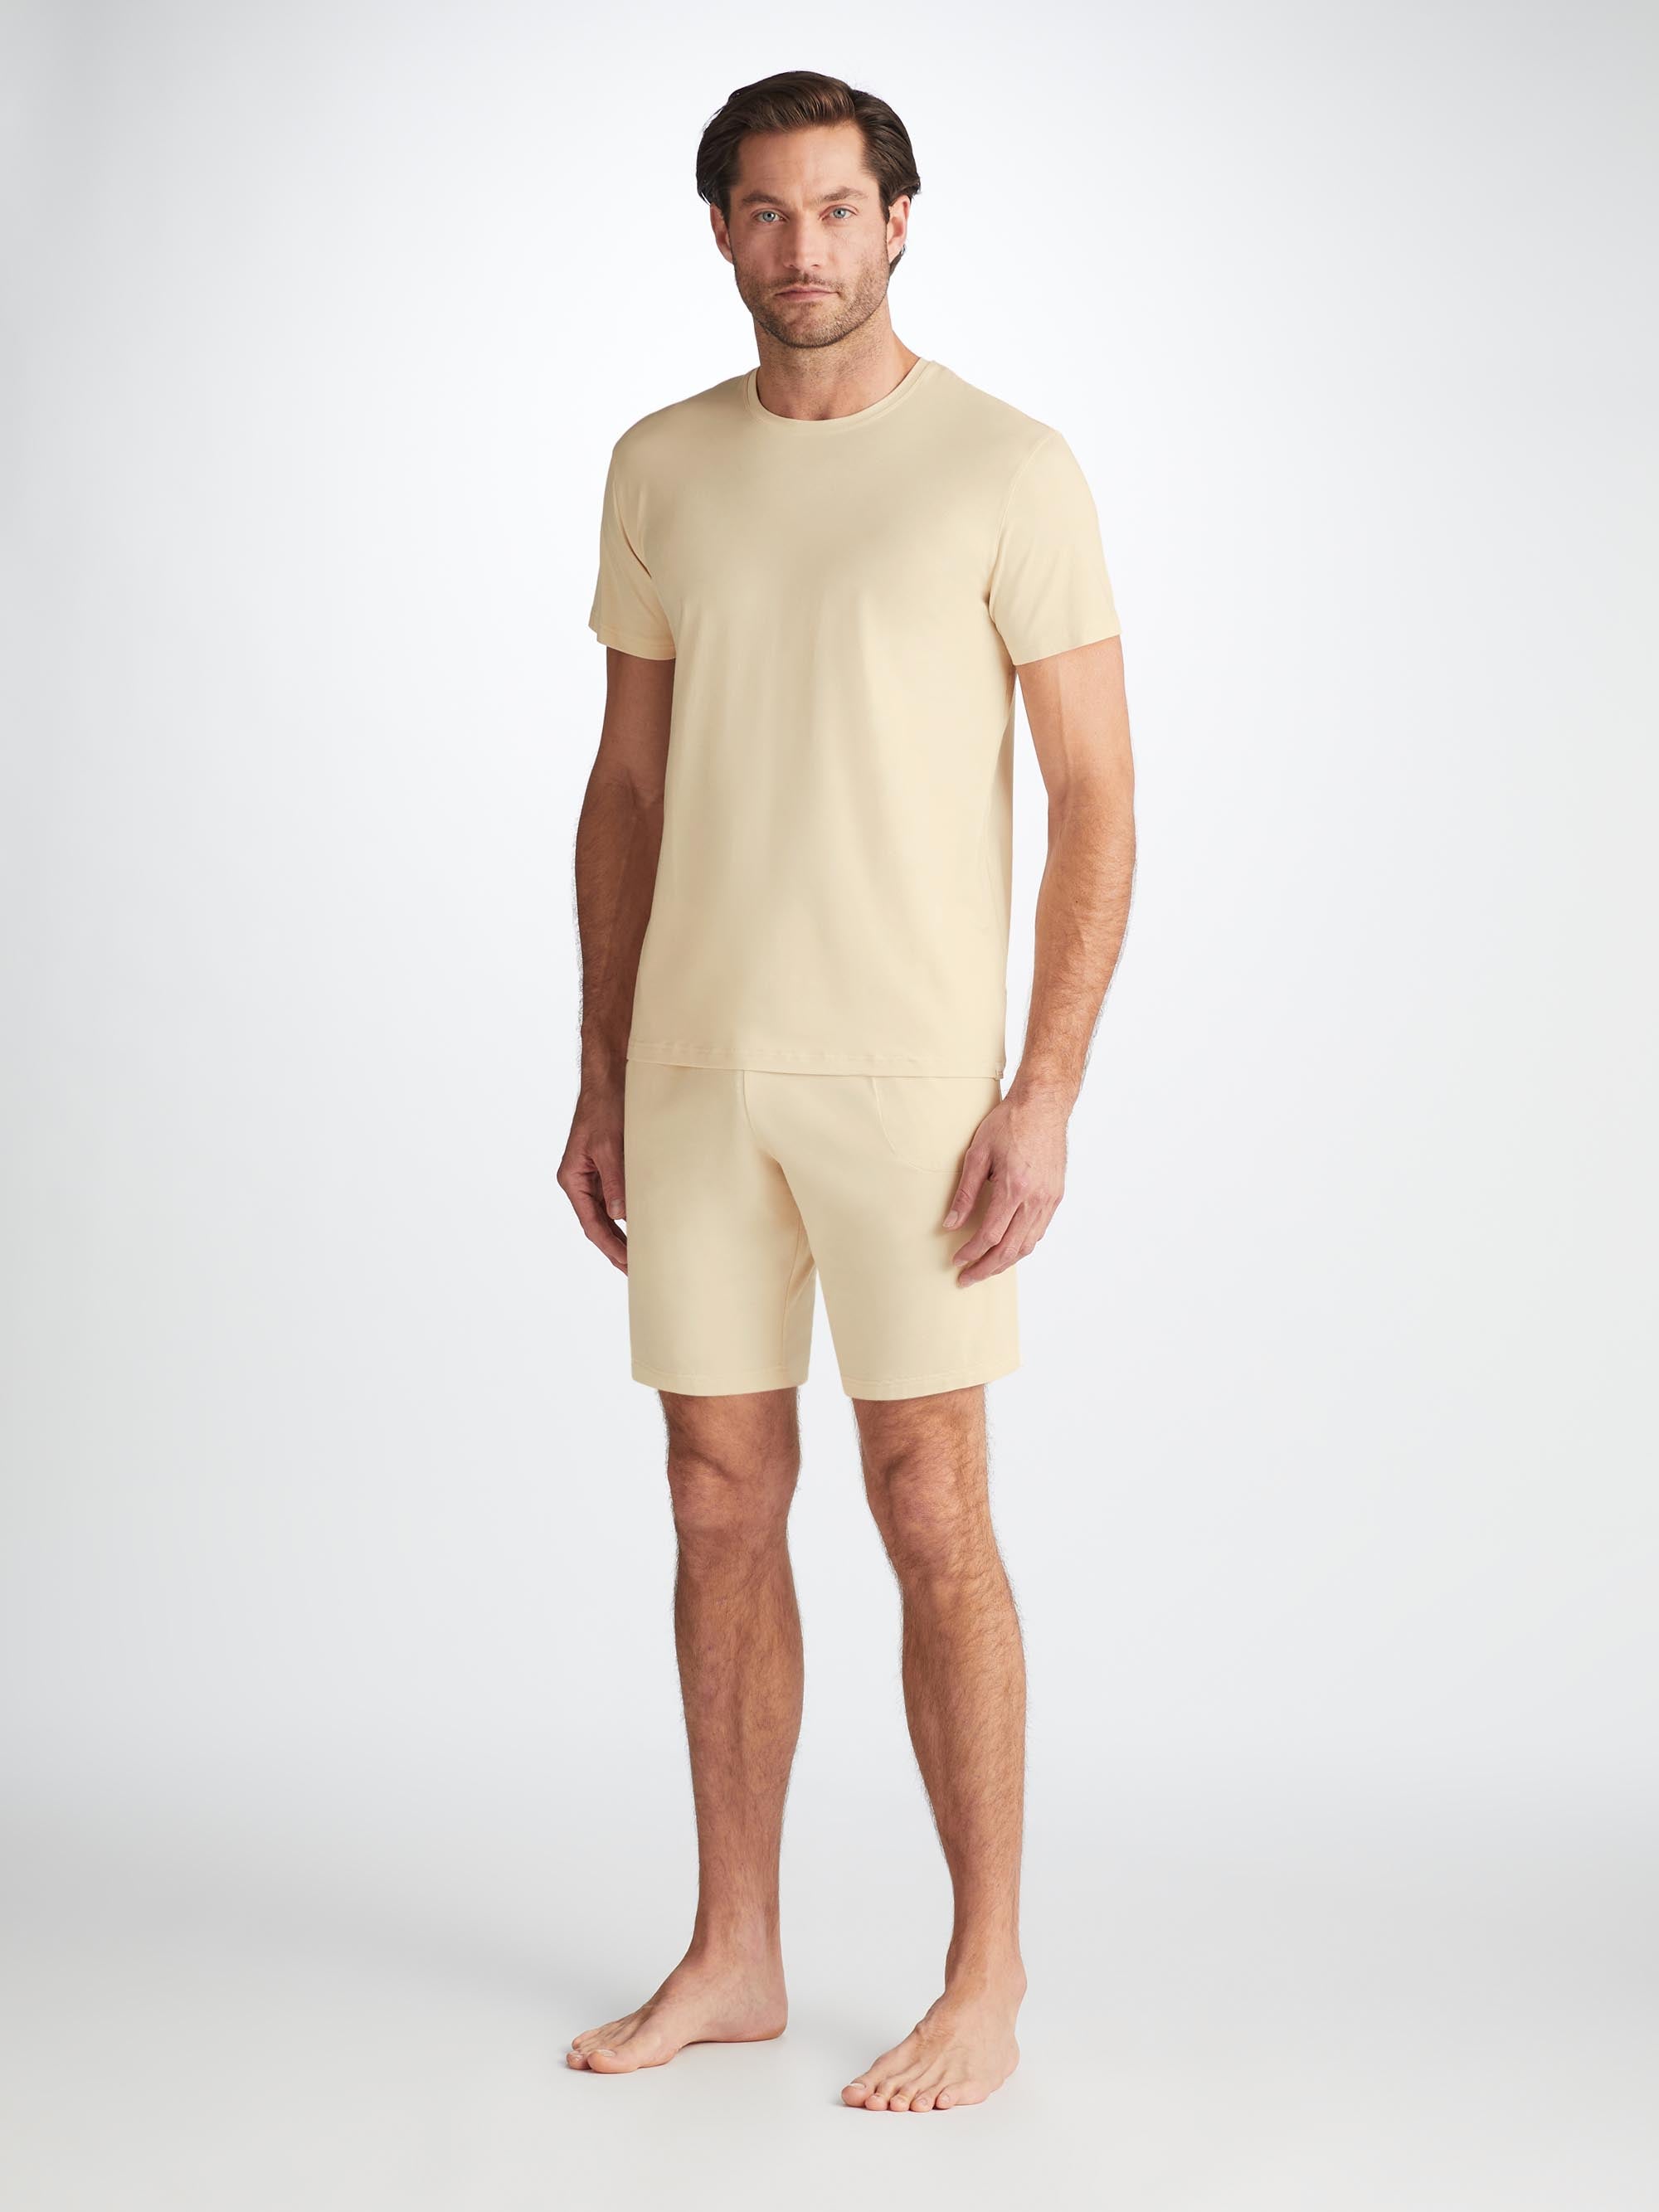 Men's Lounge Shorts Basel Micro Modal Stretch Ecru